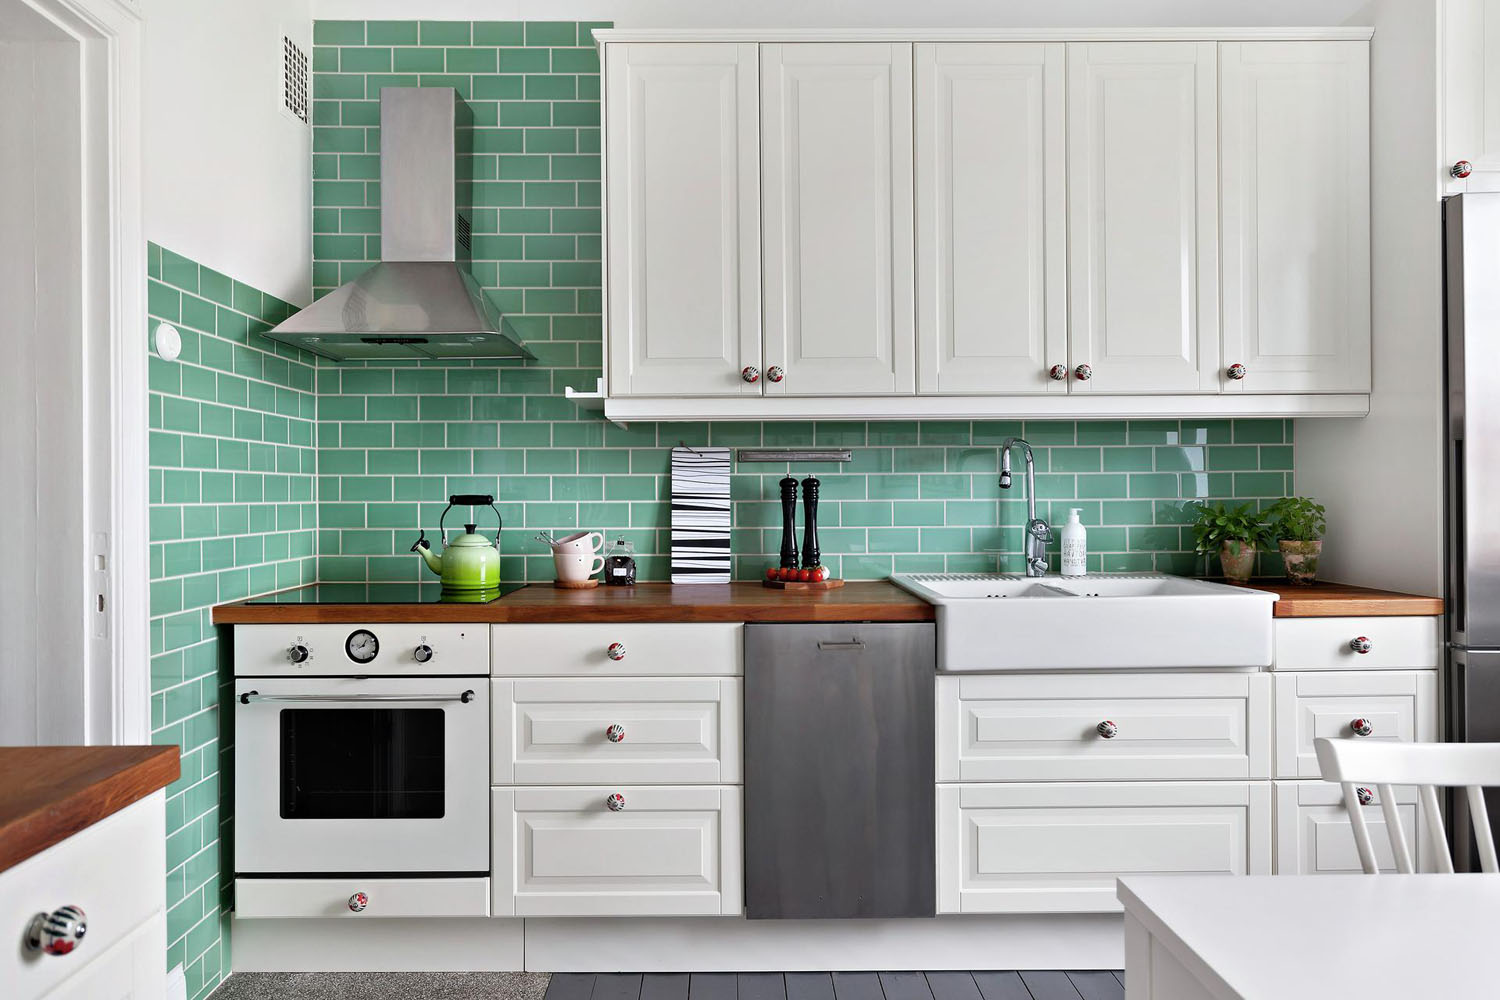 White IKEA Kitchen with Green Tiles